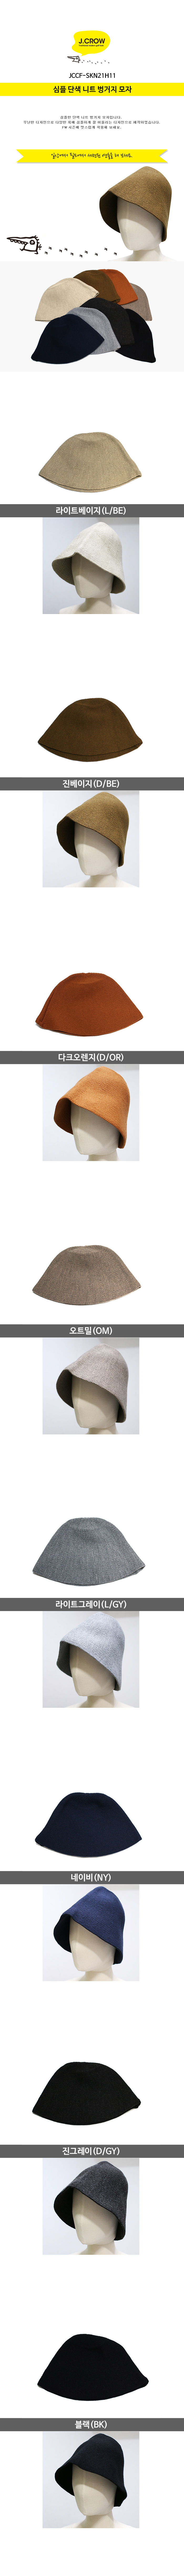 제이크로우 심플 단색 니트 벙거지 모자 (JCCF-SKN21H11) 색상 설명